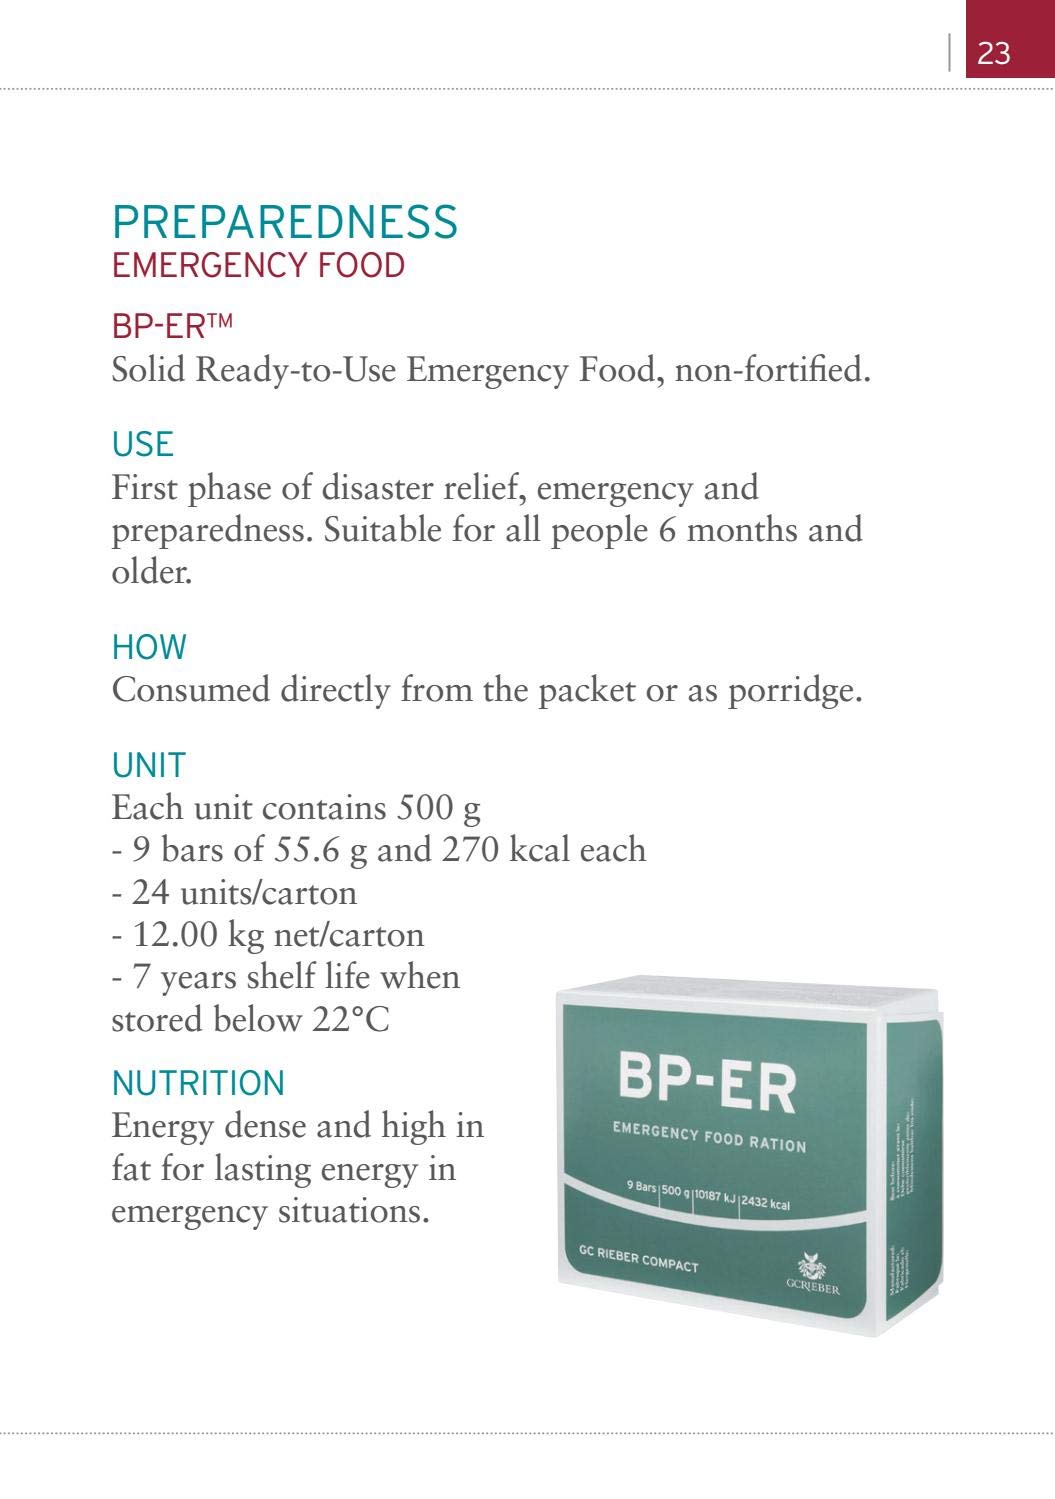 Notfallration BP-ER 14 Tage ca 35000 kcal - Kompakte, haltbare, leichte Notfallnahrung BP-ER